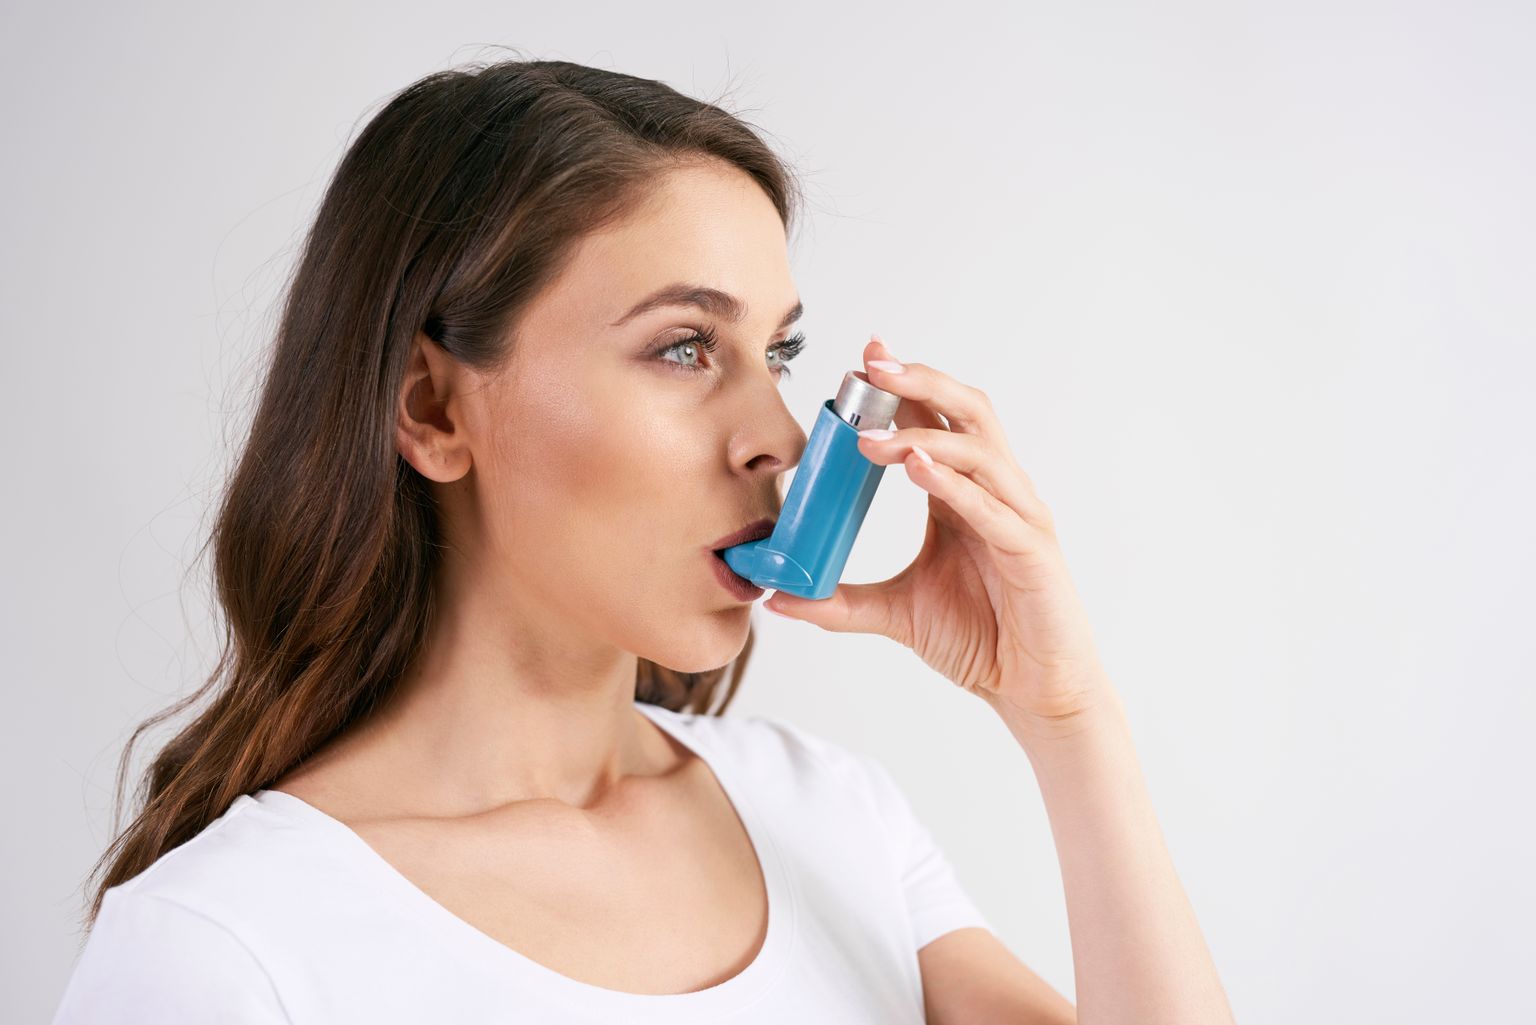 Füüsiline aktiivsus parandab astmahaigete elukvaliteeti.